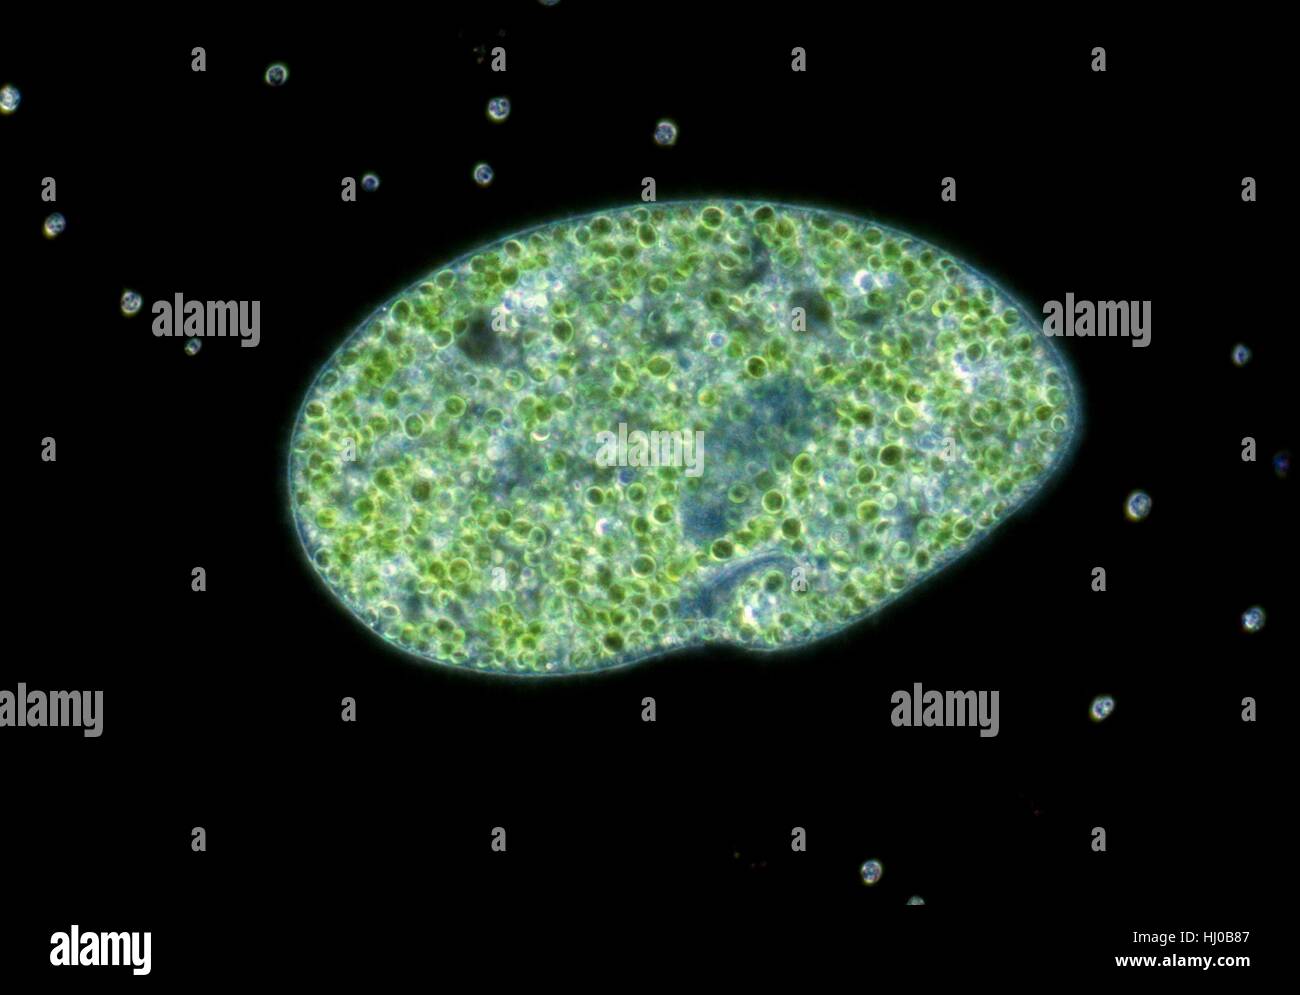 Luce Darkfield micrografia di paramecio bursaria,un protozoo ciliato,che contiene endosymbiotic verde (alghe Chlorella sp.).Paramecio si trovano principalmente in vasche stagnanti,l'alimentazione su batteri particelle vegetali.Hanno bocca permanente chiamato grove orale.alimenti prelevati in attraverso la scanalatura orale viene digerito Foto Stock